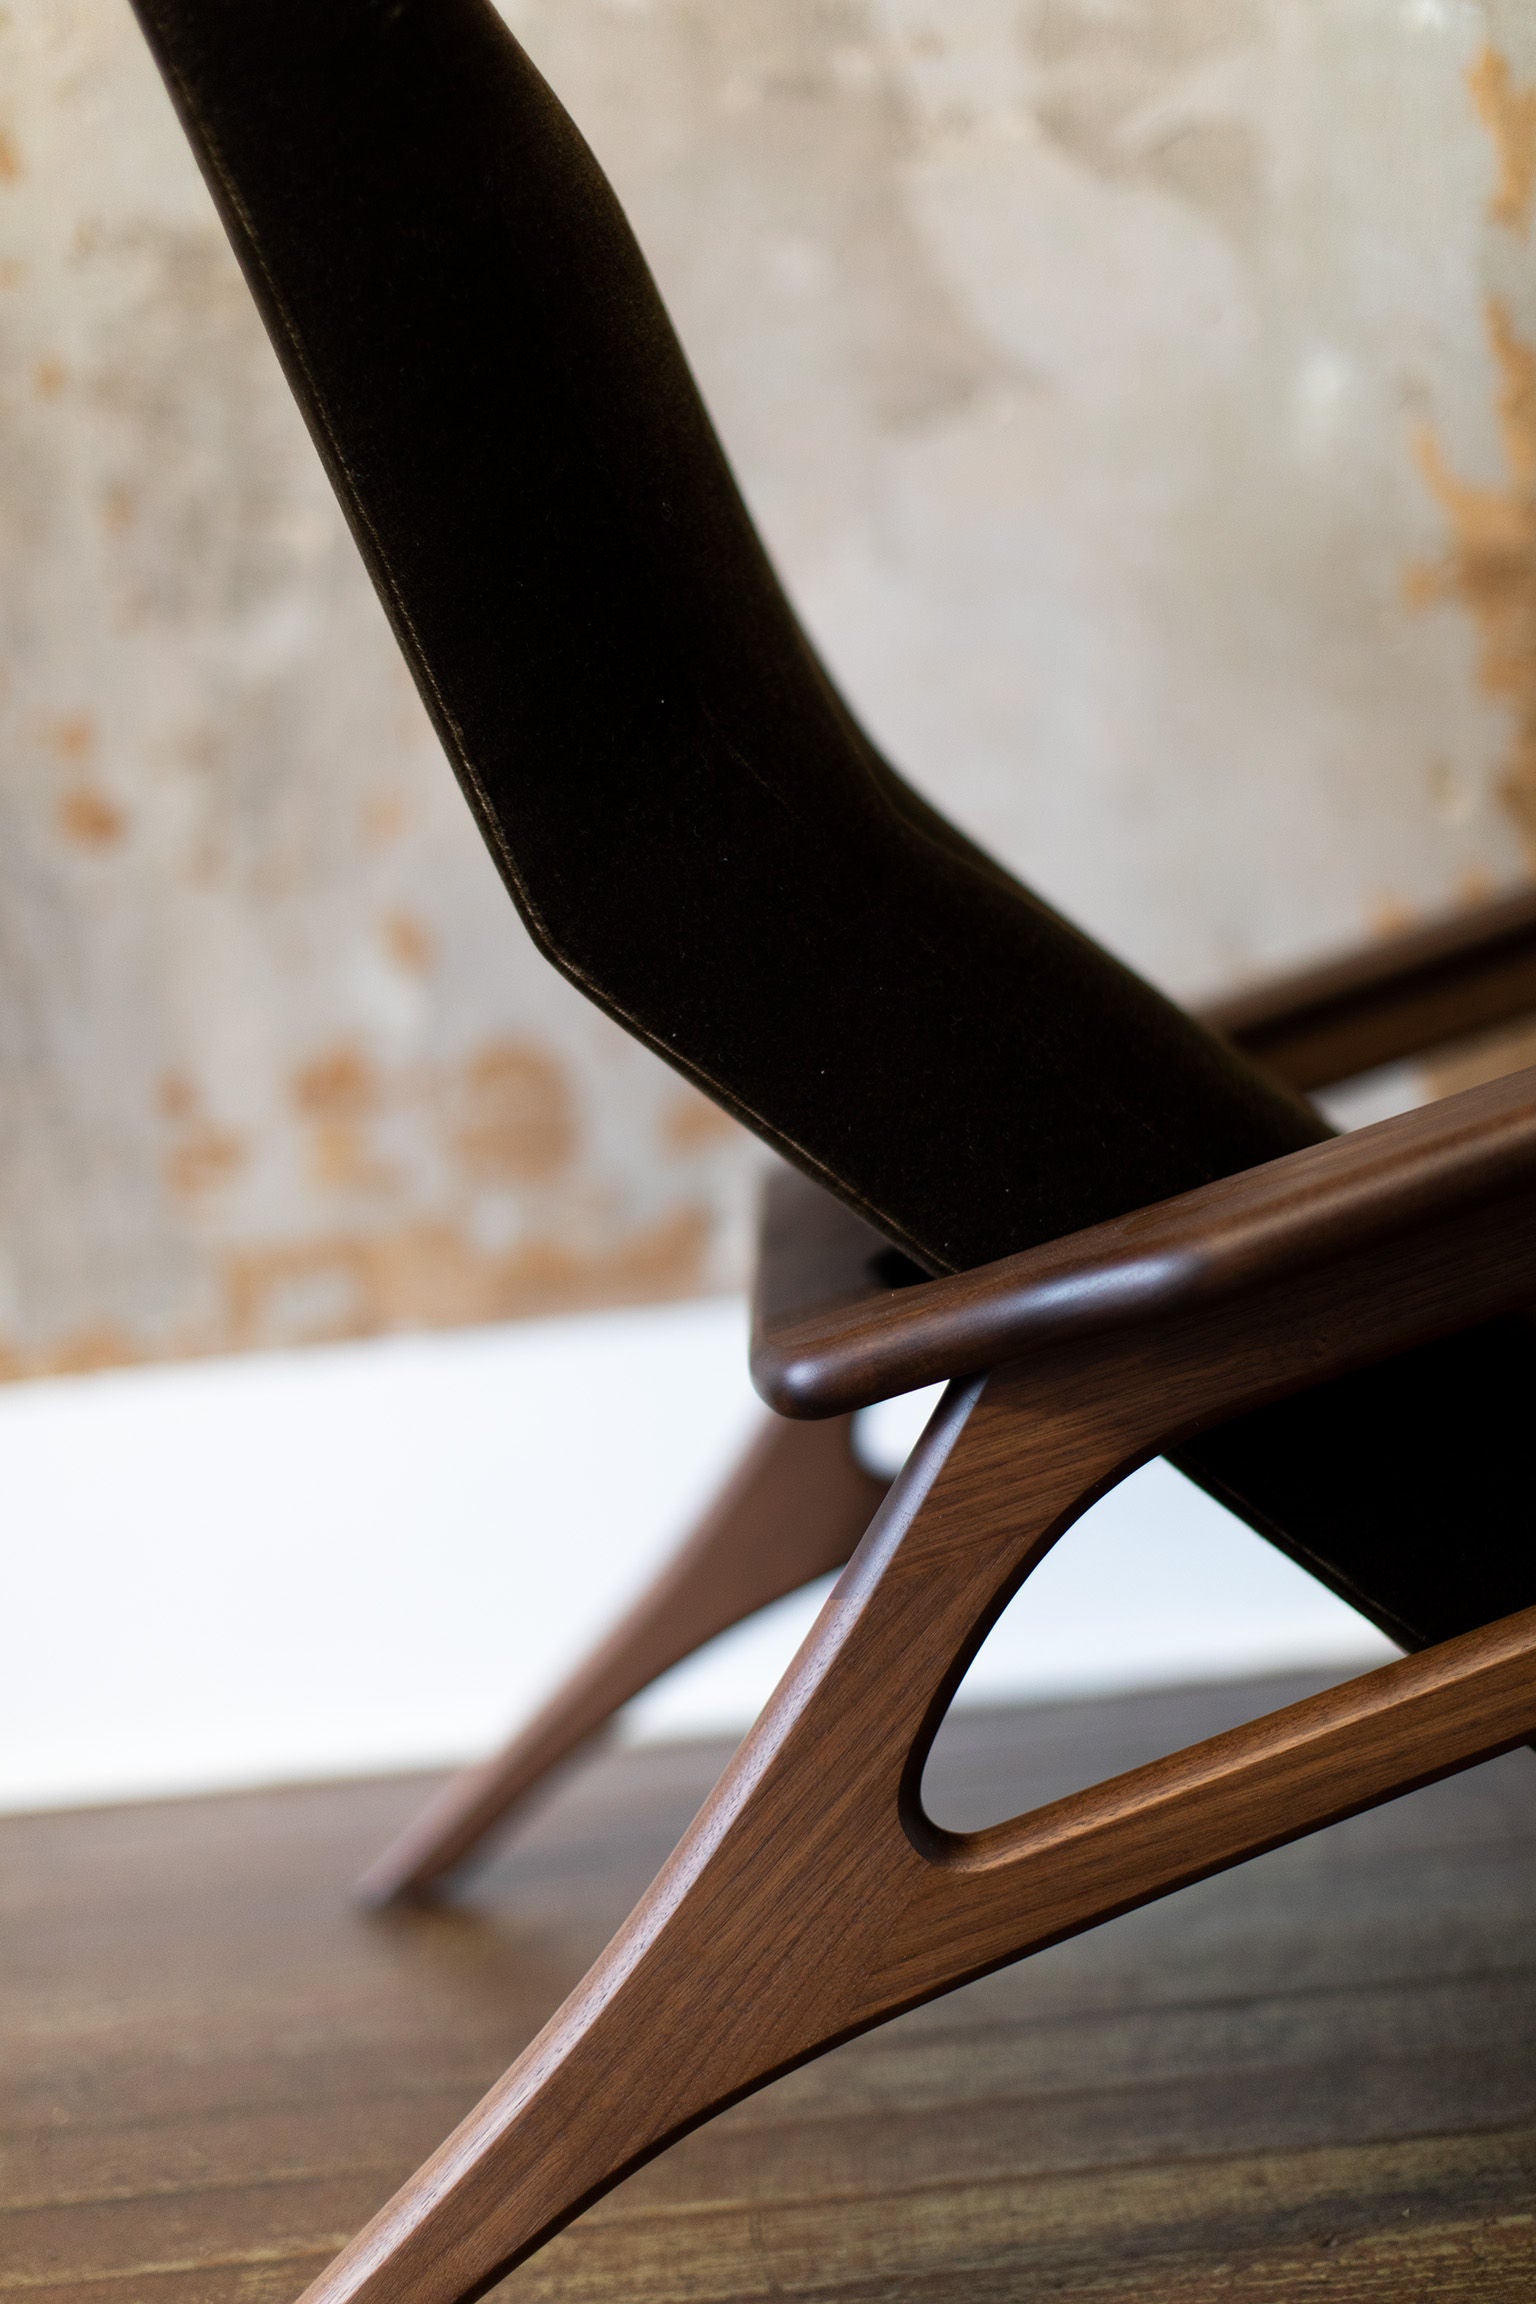 Craft Associates Modern Lounge Chair - 2002 - The Parallax